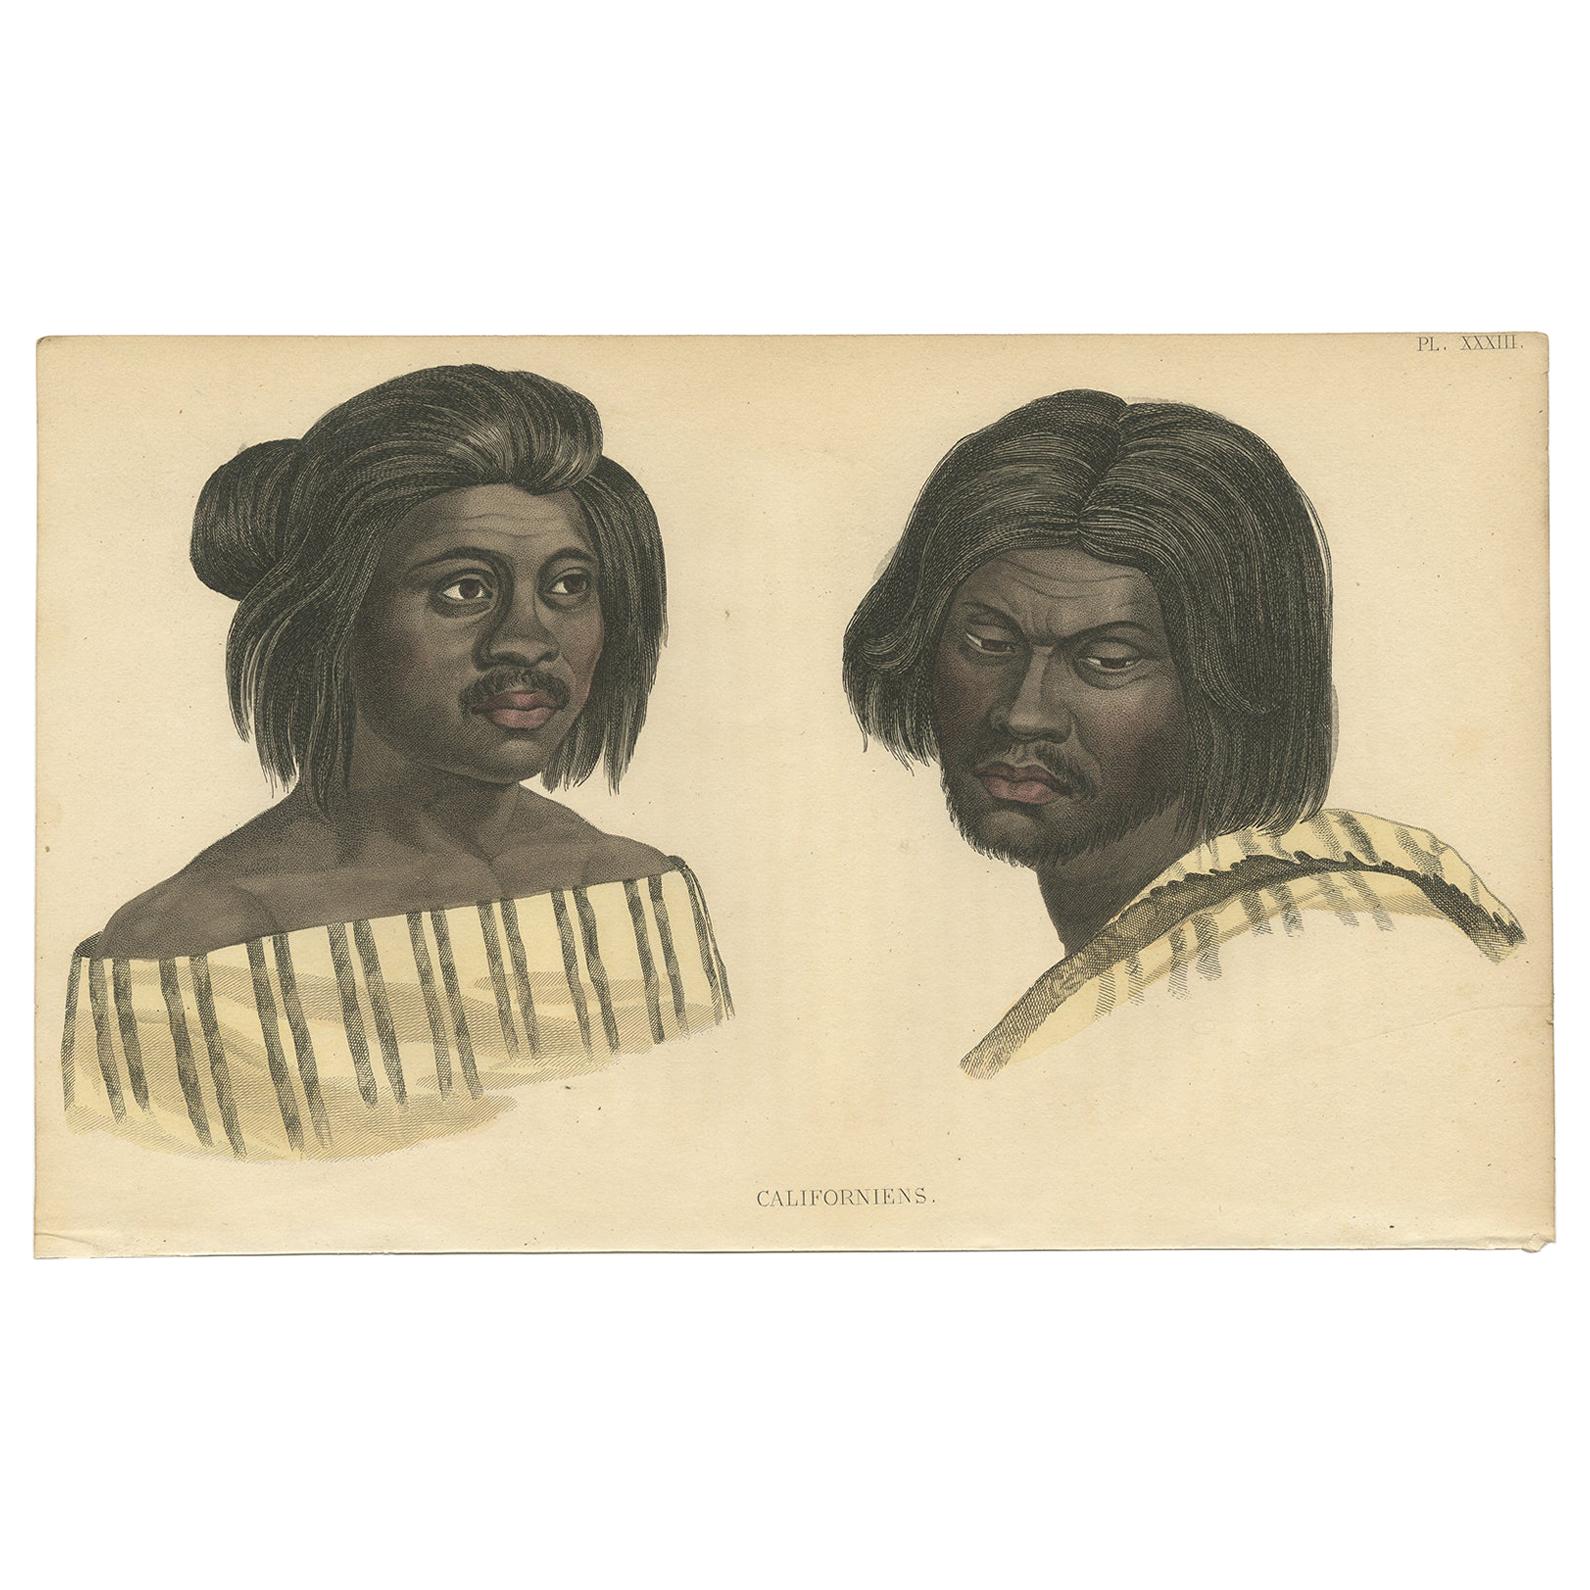 Impression ancienne des Californiens autochtones par Prichard (1843)